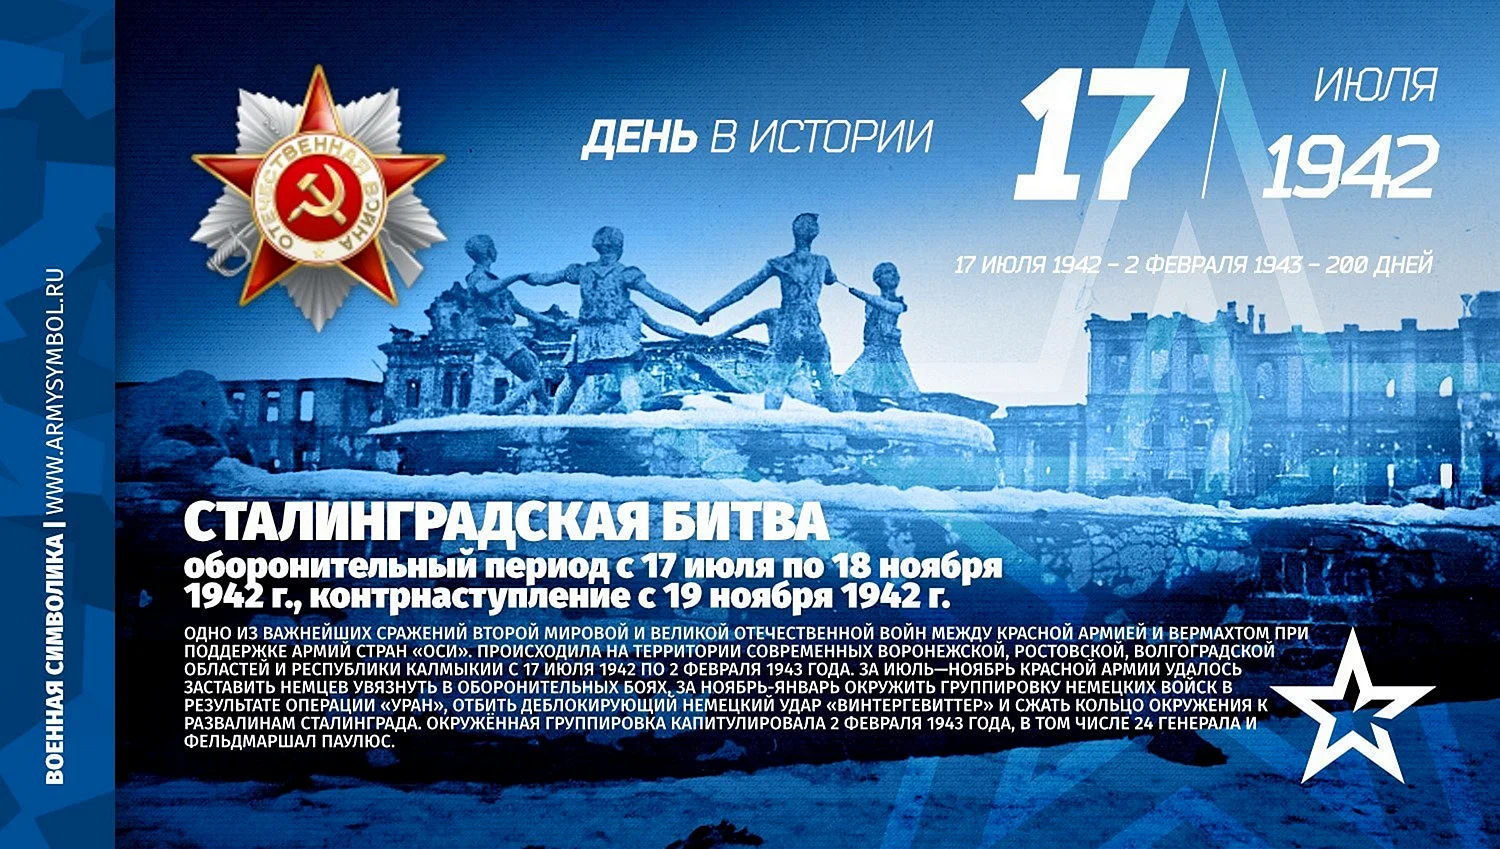 Сталинградская битва памятная Дата